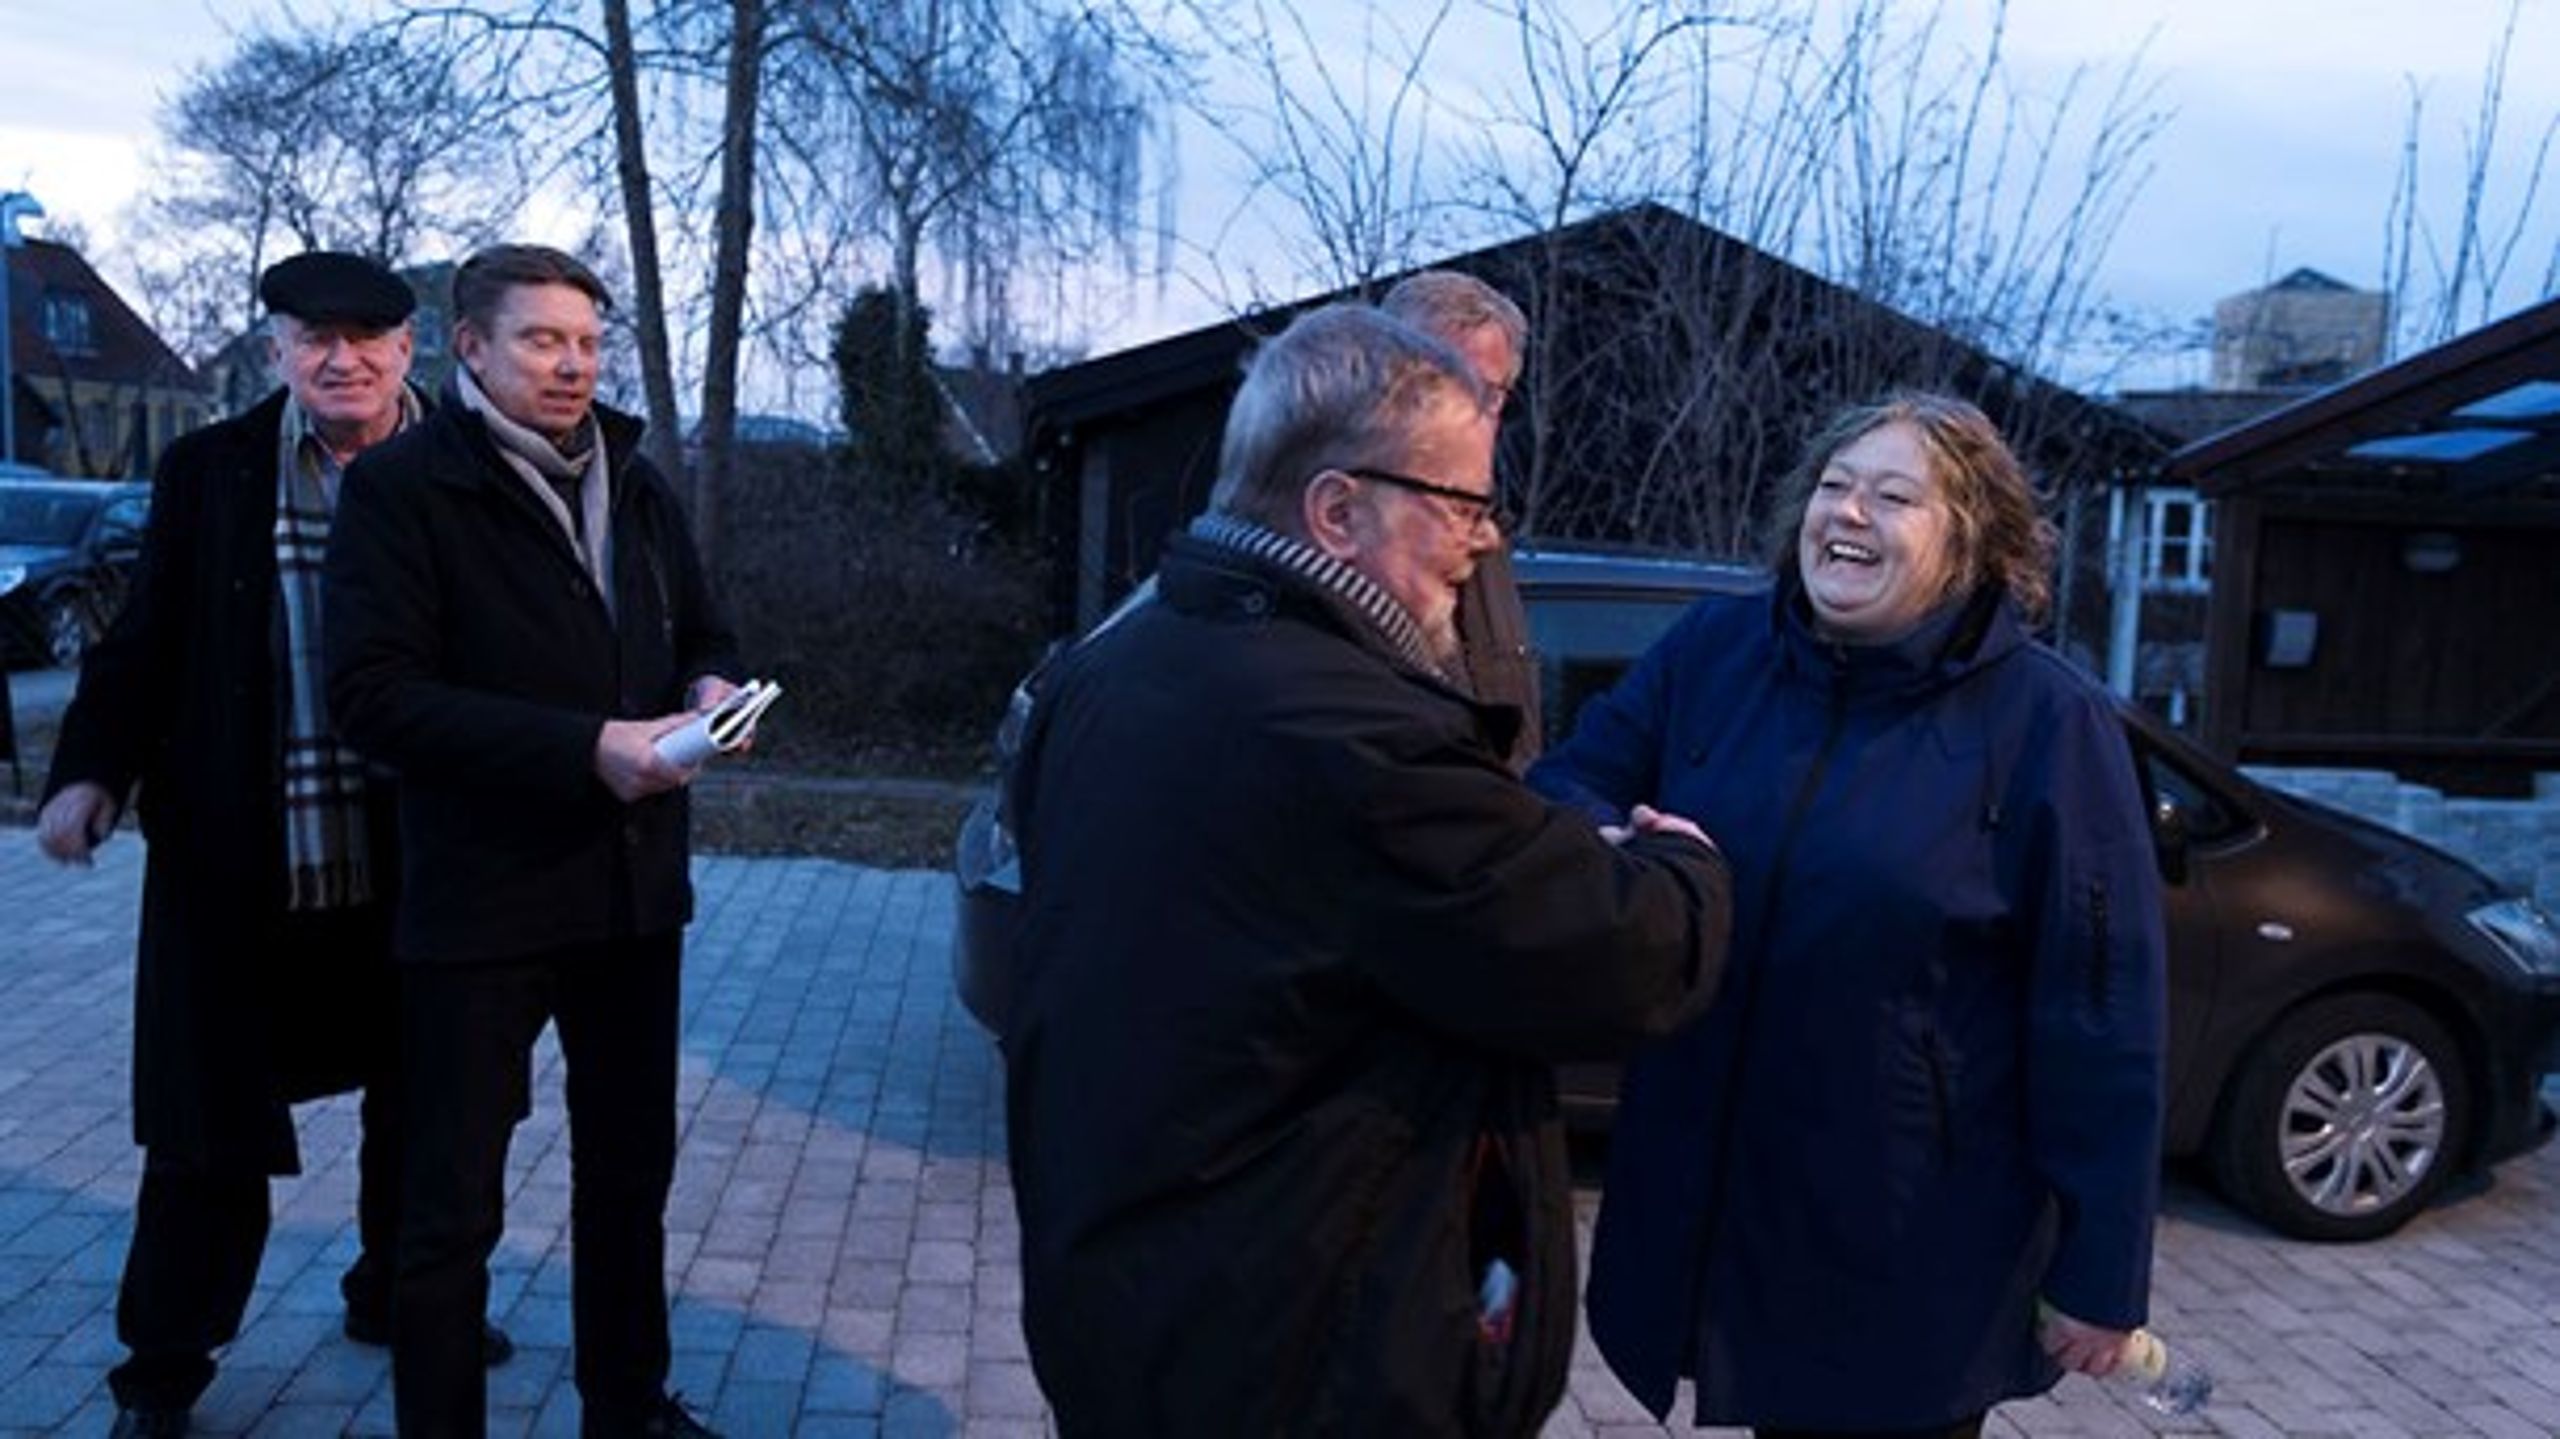 Den tidligere minister Mette Gjerskov (S) vandt afstemningen om kandidatur mandag aften i Roskilde.